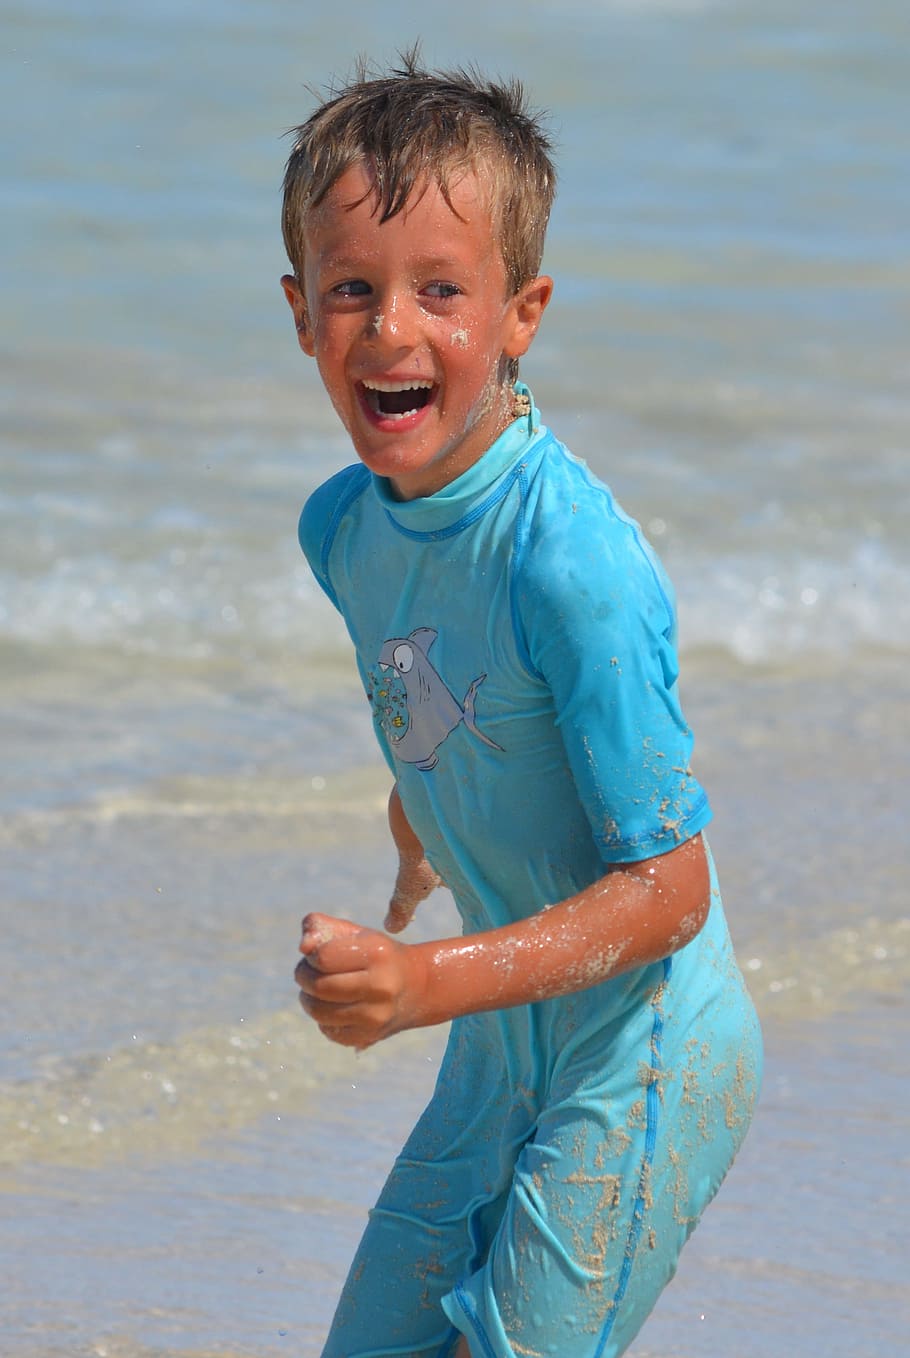 子供, 少年, 楽しみ, 笑い, 海, 人物, 人々, 紫外線耐性のある服, ビーチ, 水